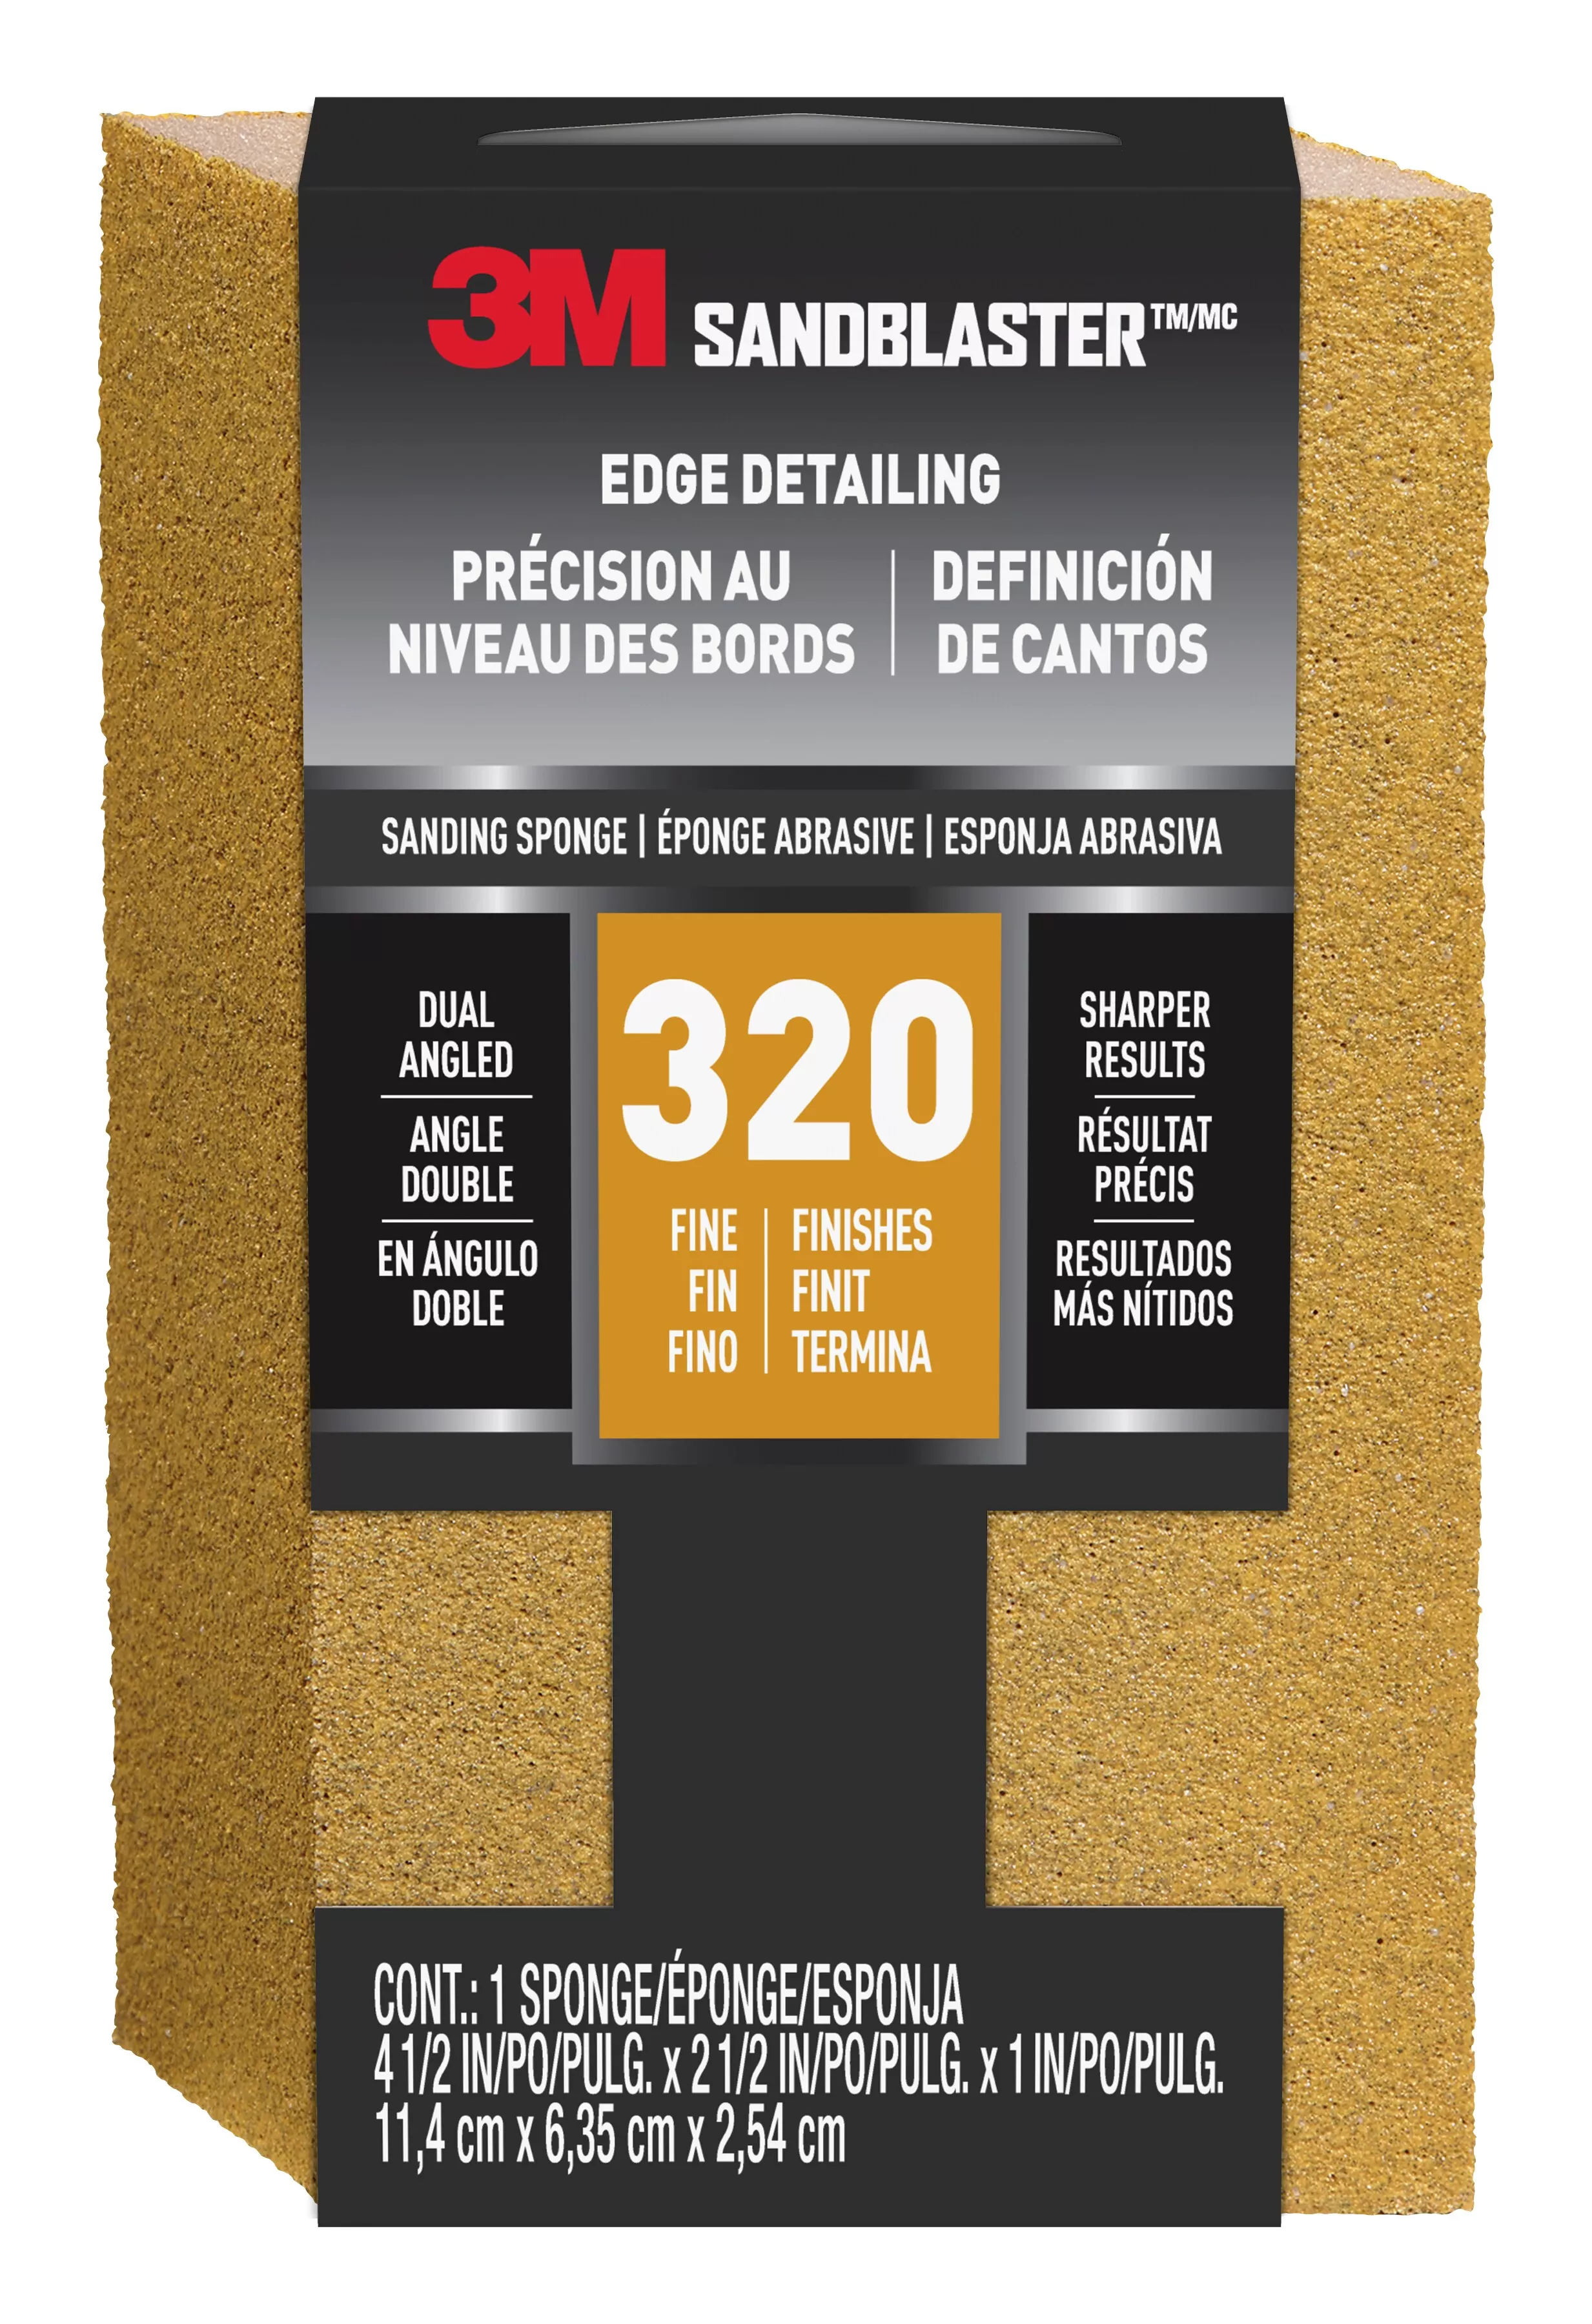 3M™ SandBlaster™ EDGE DETAILING Sanding Sponge, 9566 ,320 grit, 4 1/2 in
x 2 1/2 x 1 in, 1/pk